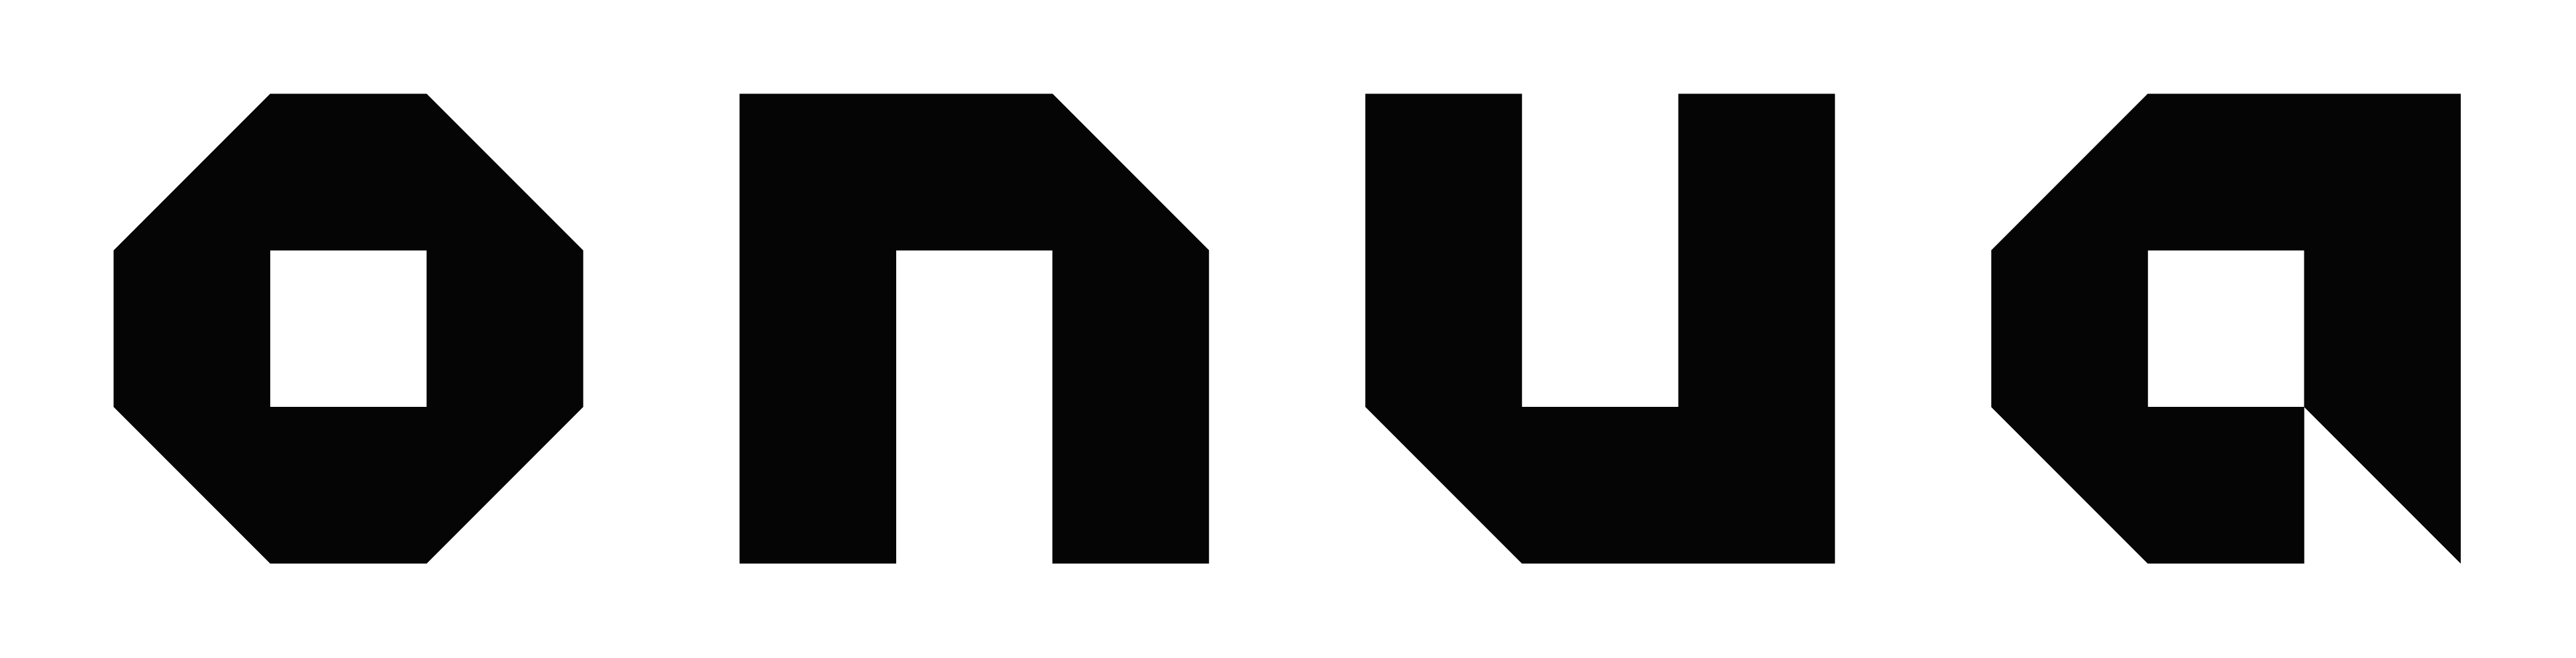 Logo Onua - Onua.es - Marca de revestimientos decorativos de hormigón